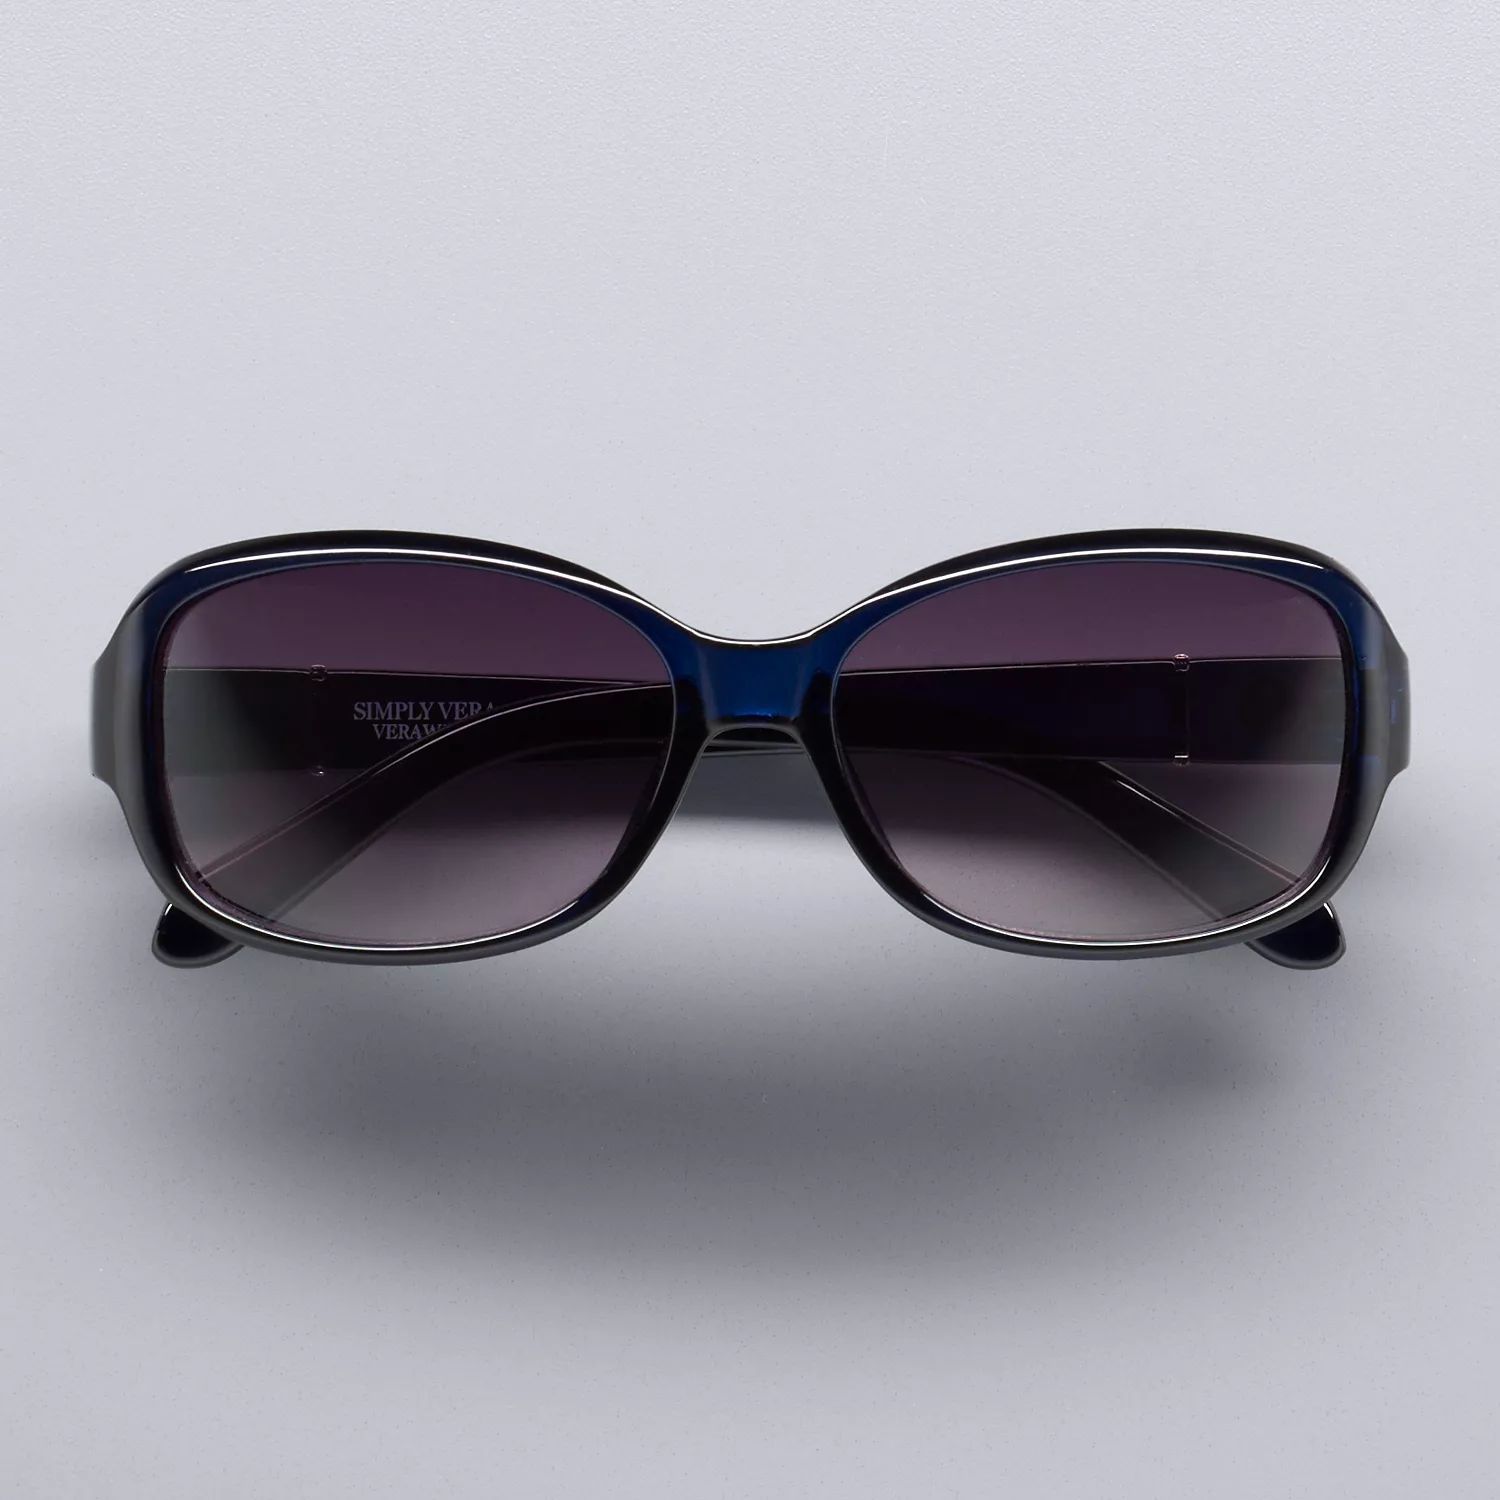 Женские закругленные прямоугольные солнцезащитные очки Simply Vera Vera Wang Suzy Simply Vera Vera Wang, темно-синий